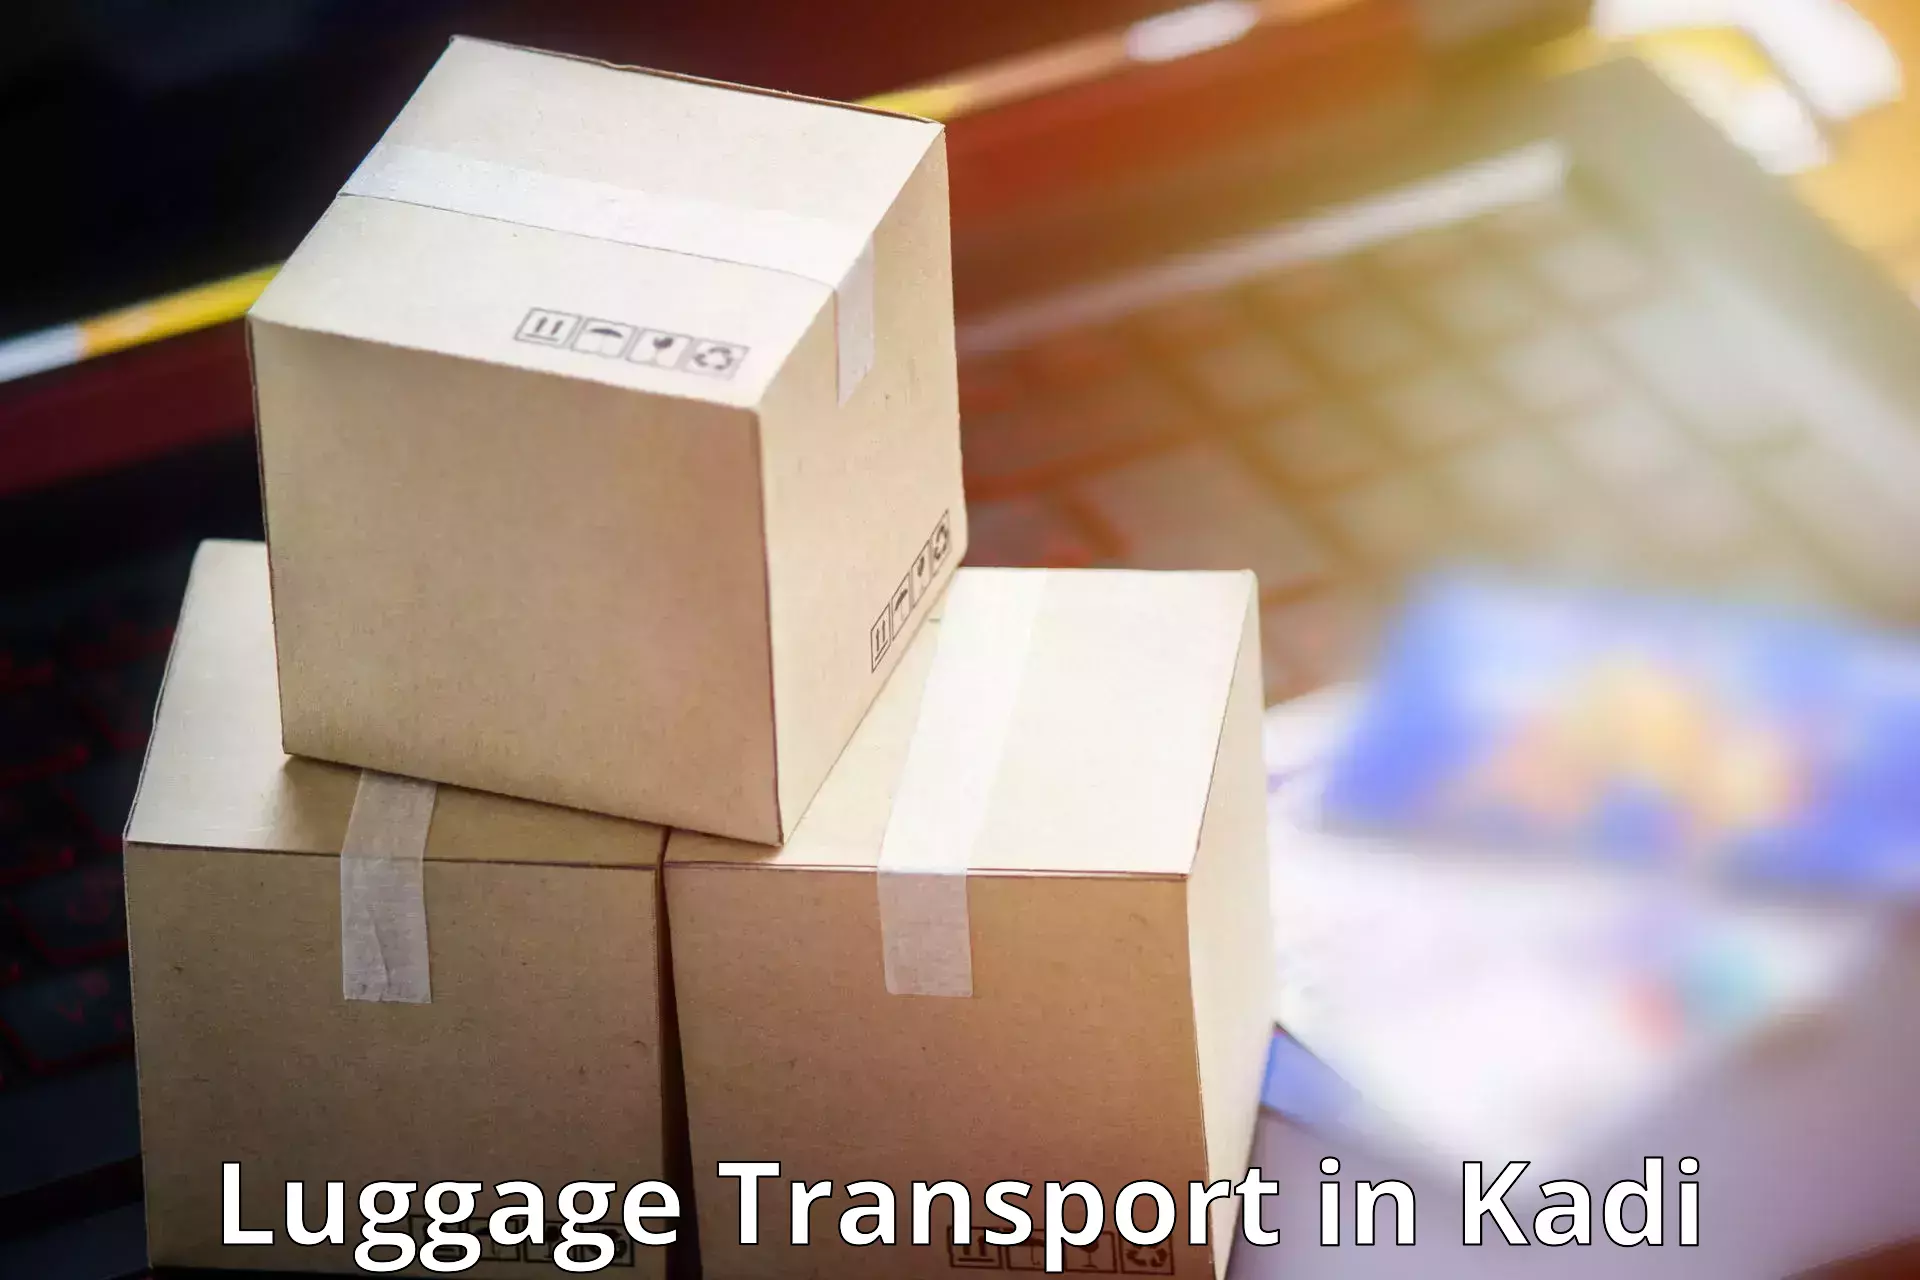 Luggage shipping discounts in Kadi